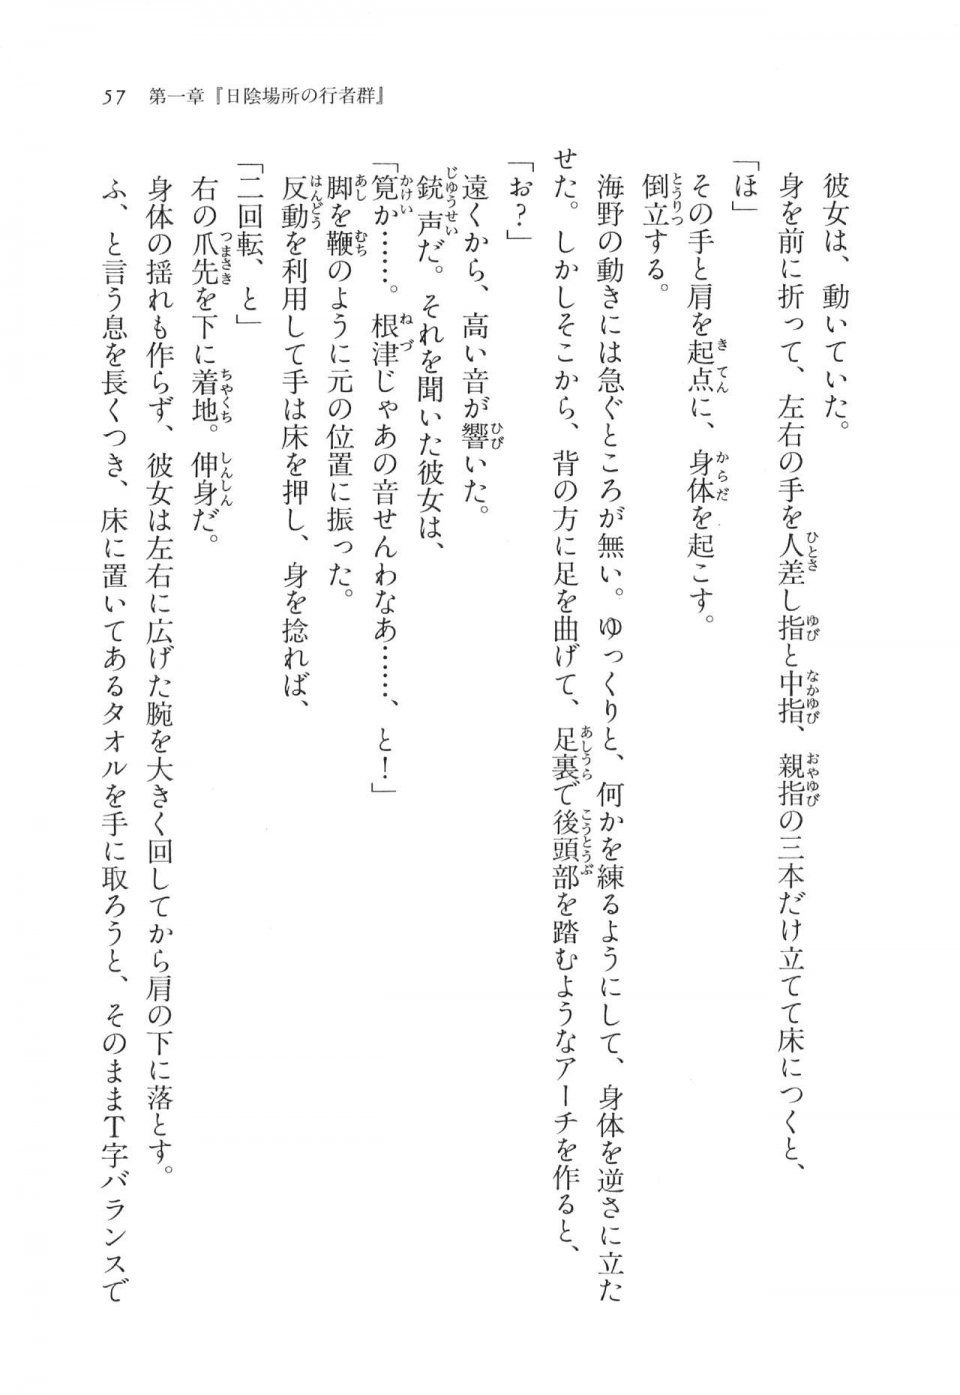 Kyoukai Senjou no Horizon LN Vol 11(5A) - Photo #57